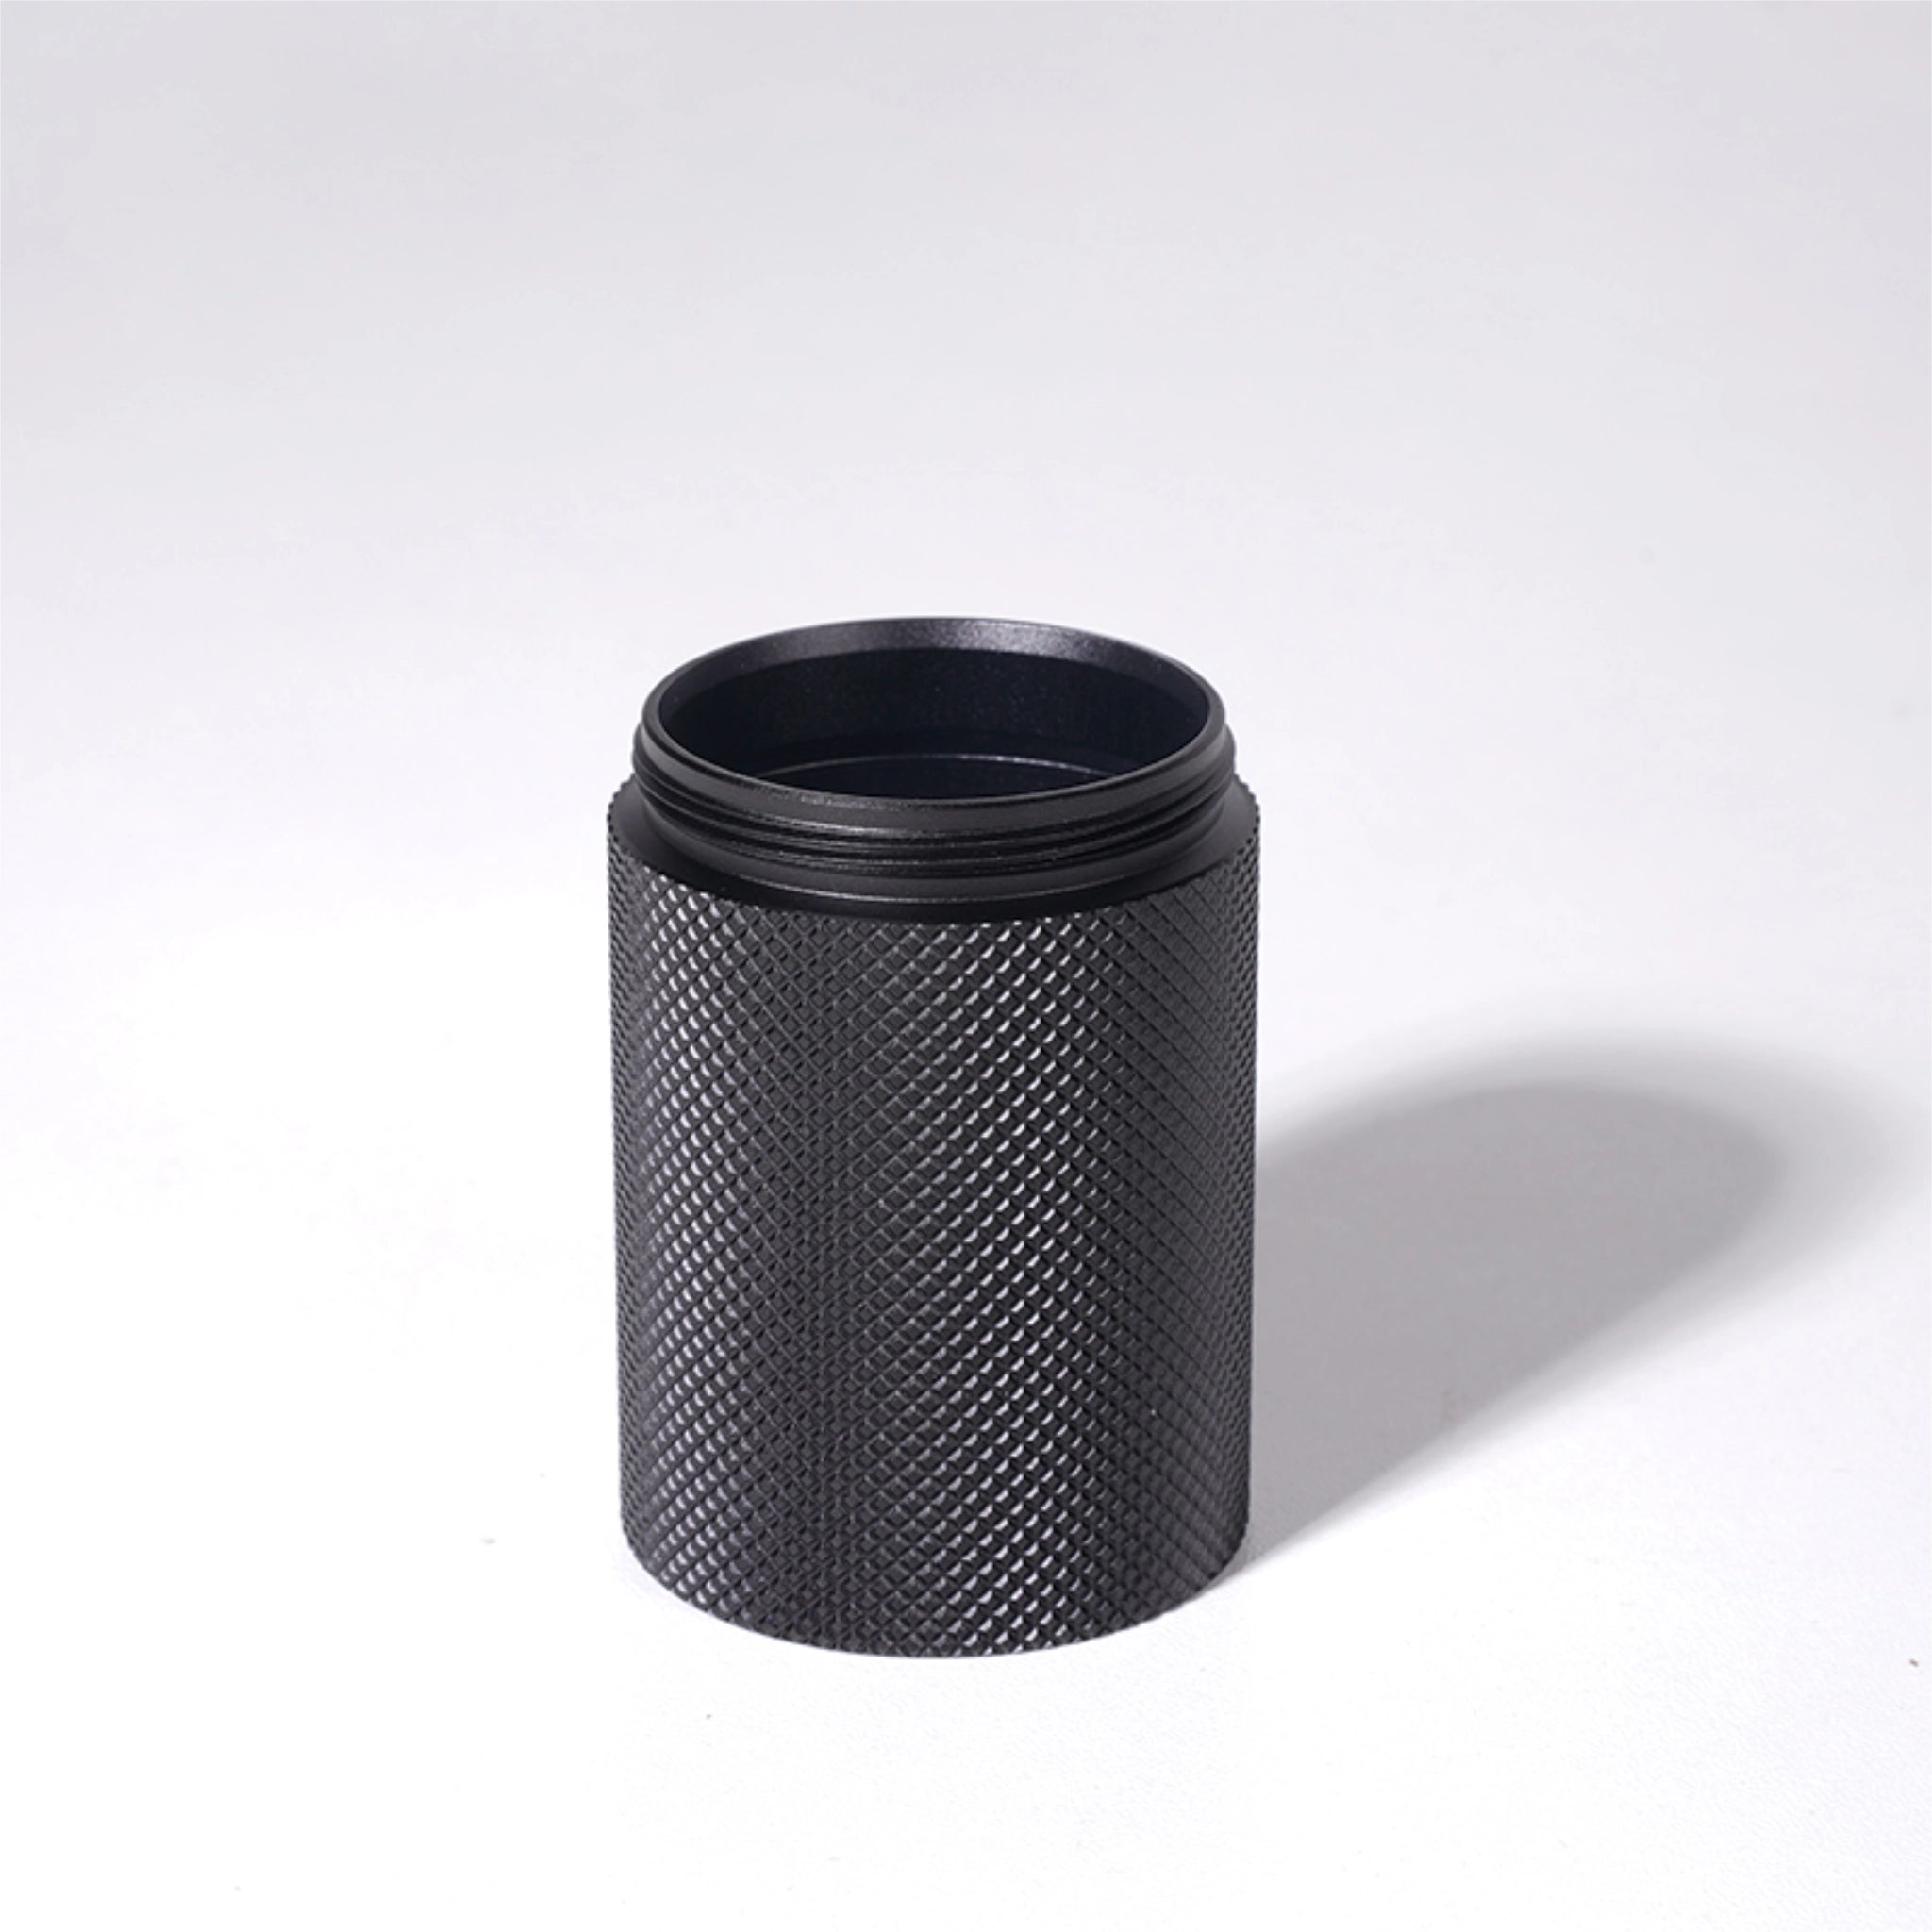 Produktbild des Mahlgutbehälters der Kaffeemühle Timemore Chestnut Slim 3 in schwarzem Aluminium-Finish. 